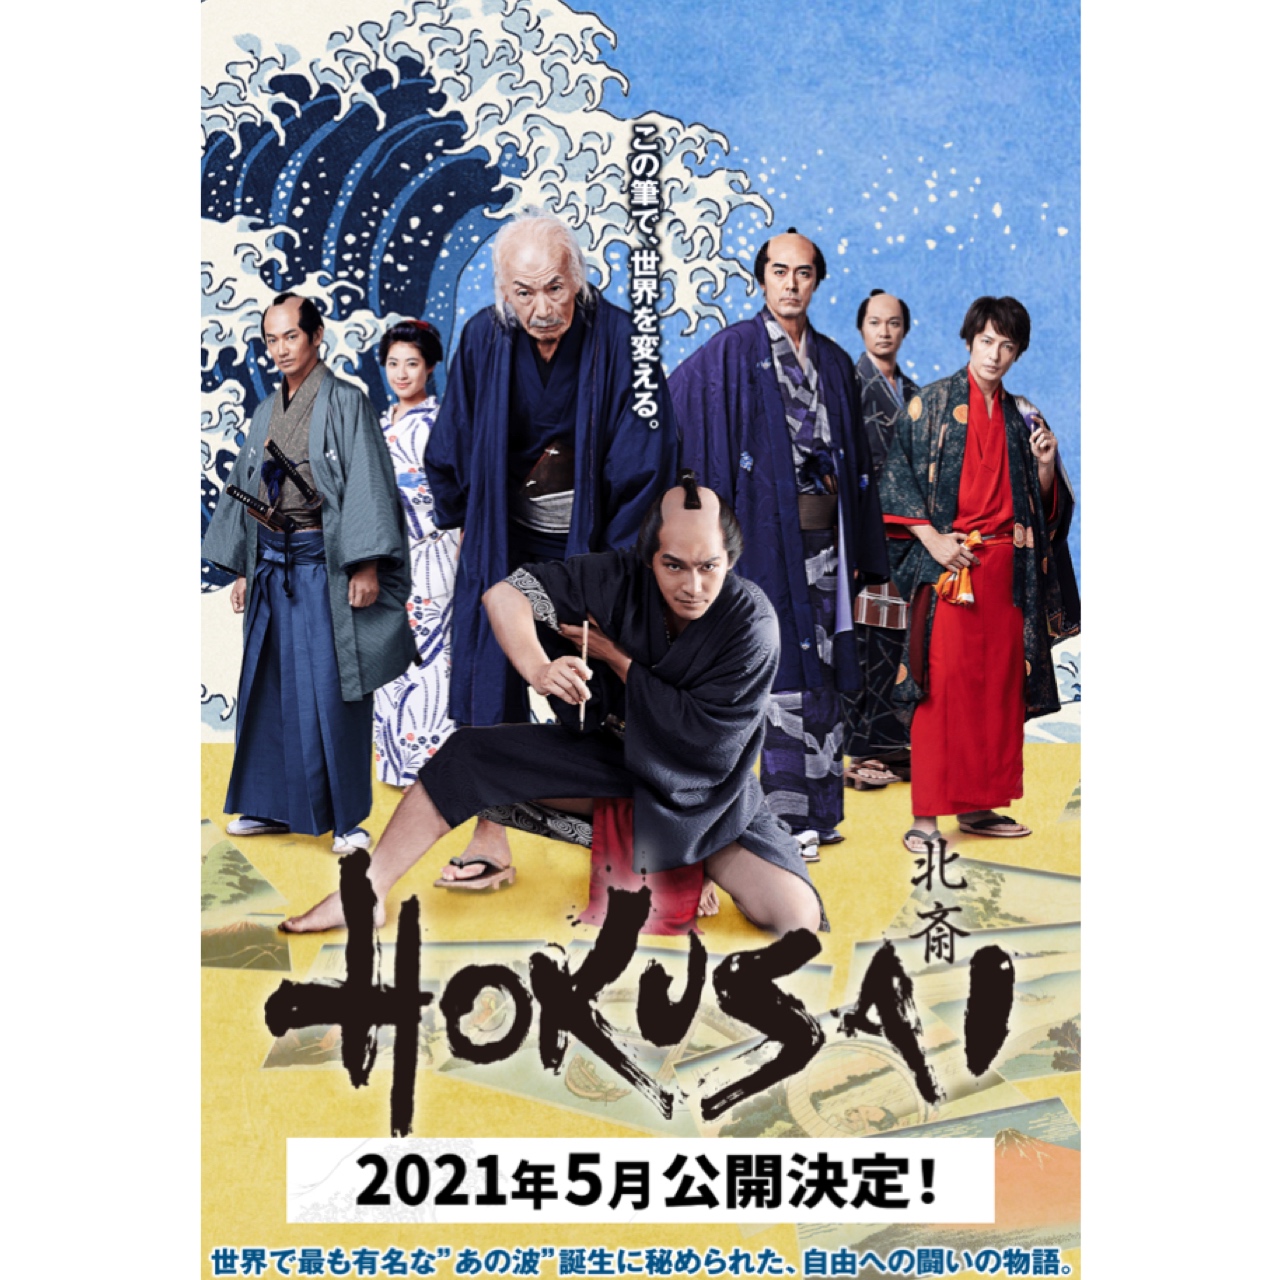 2021年5月映画「HOKUSAI」公開決定